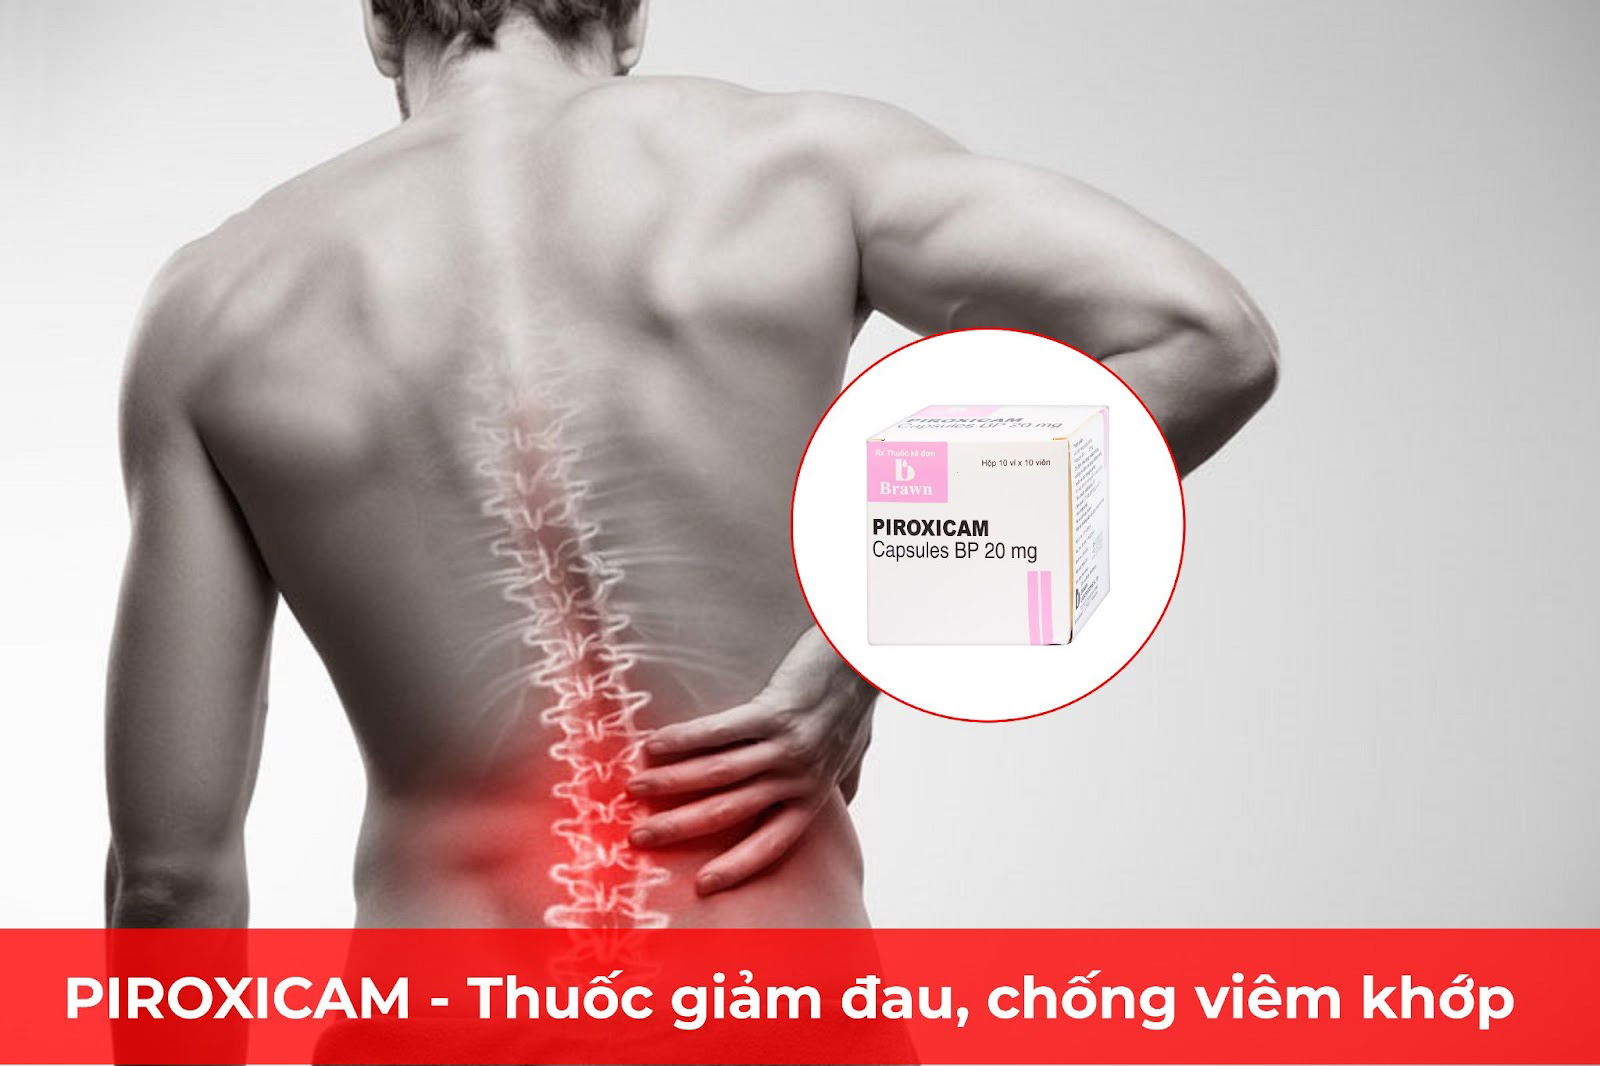 Piroxicam cải thiện đau lưng do bệnh lý cột sống hiệu quả